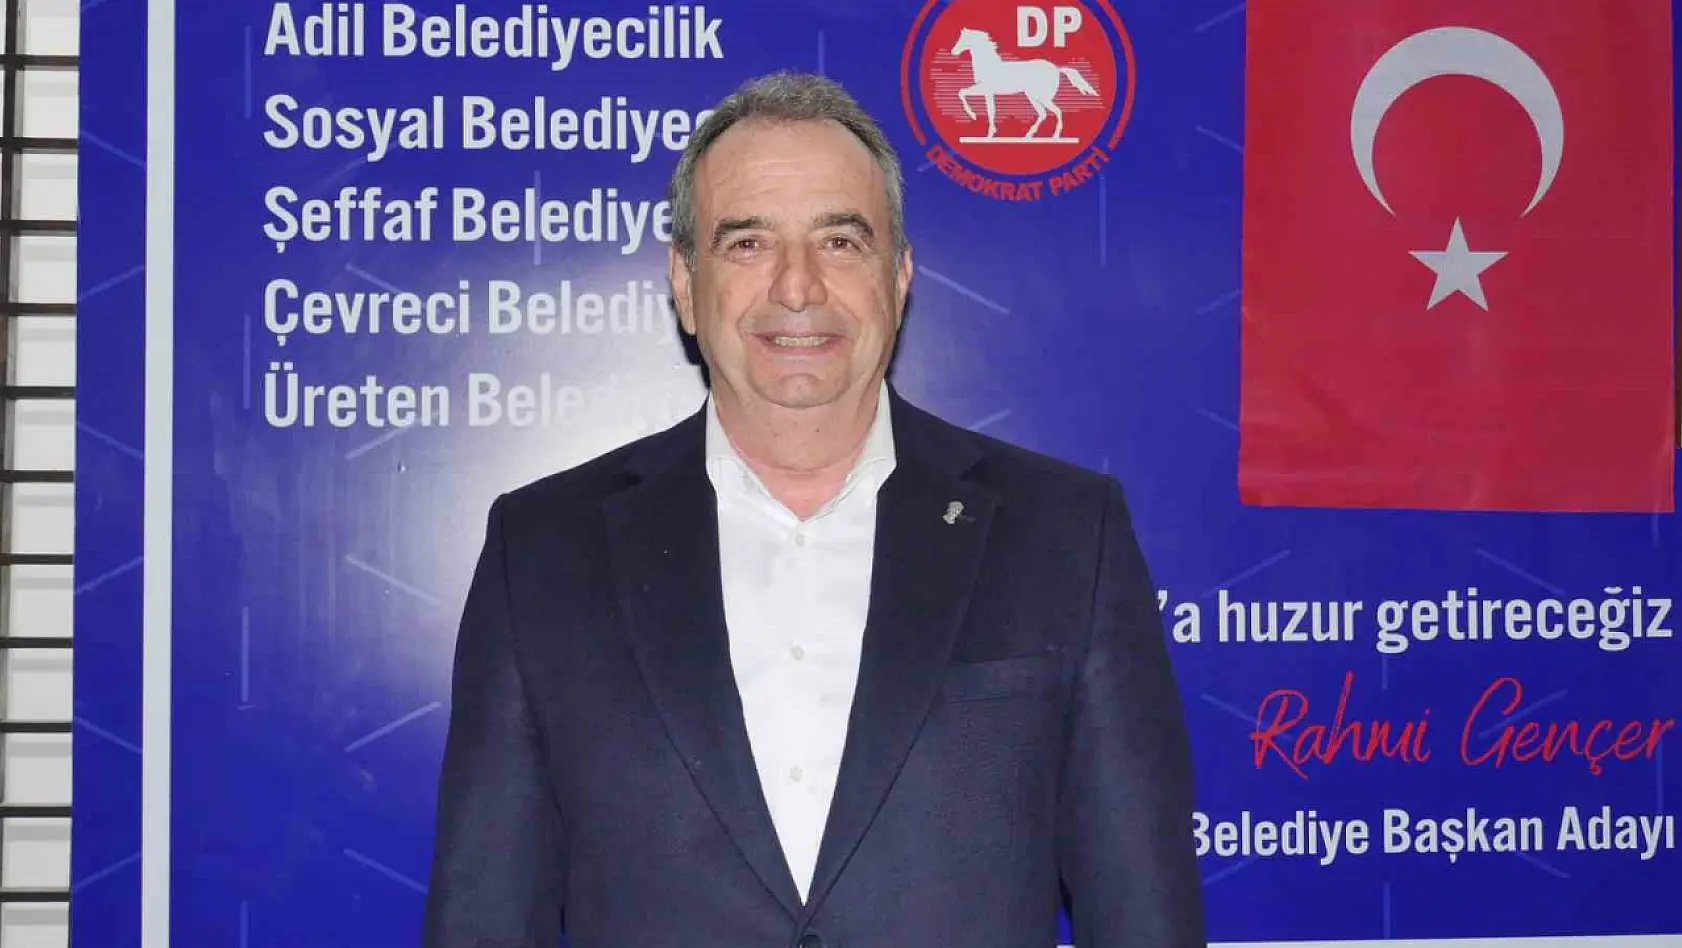 Ayvalık'ta CHP'den aday gösterilmeyen eski başkan Gençer, DP'den aday oldu